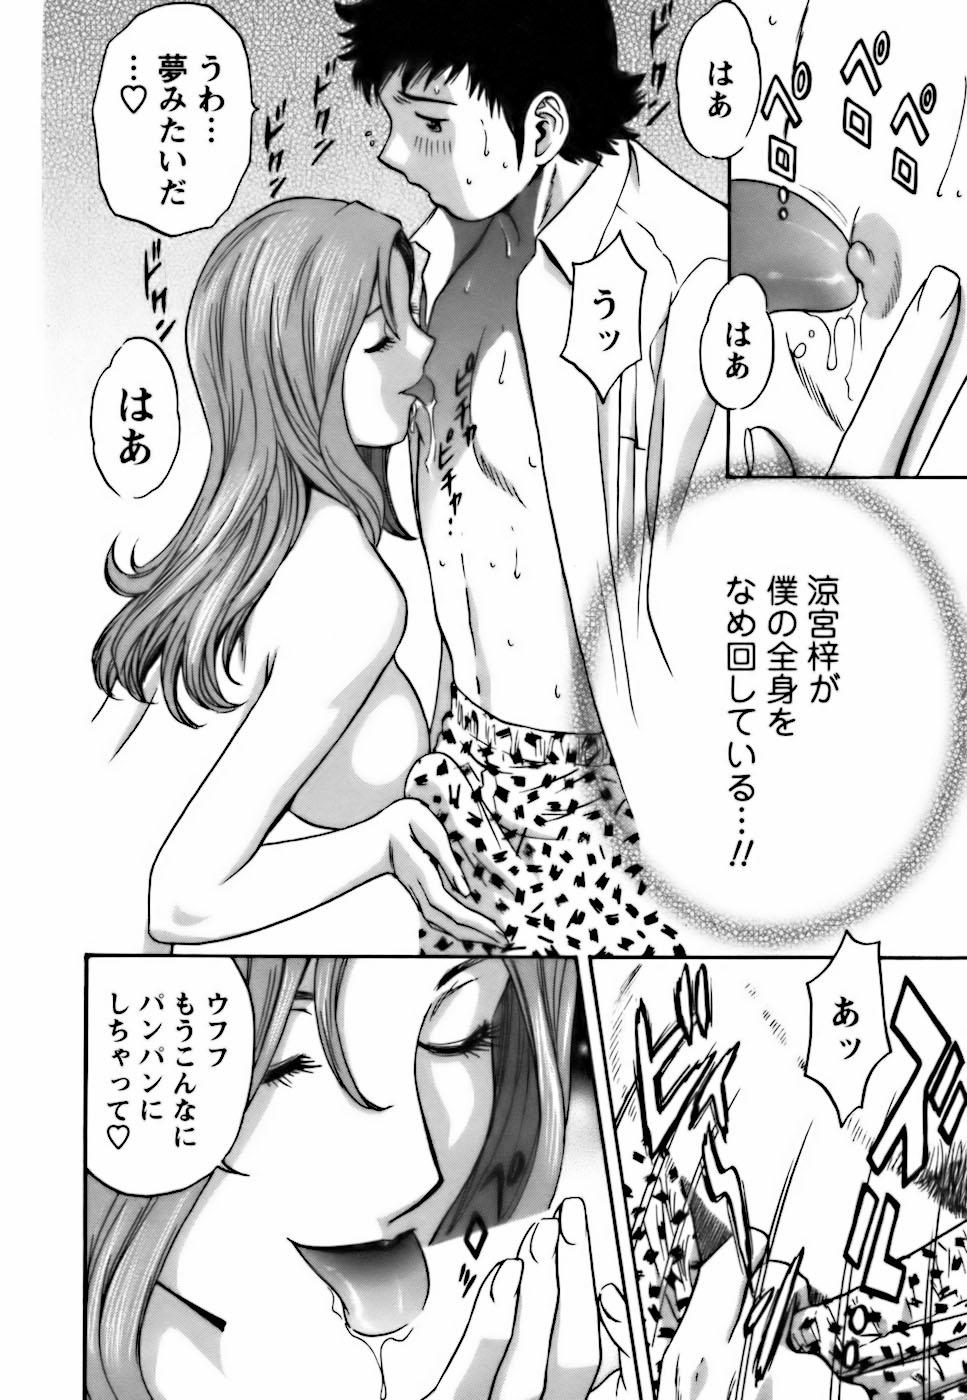 [Hidemaru] Mo-Retsu! Boin Sensei (Boing Boing Teacher) Vol.3 39